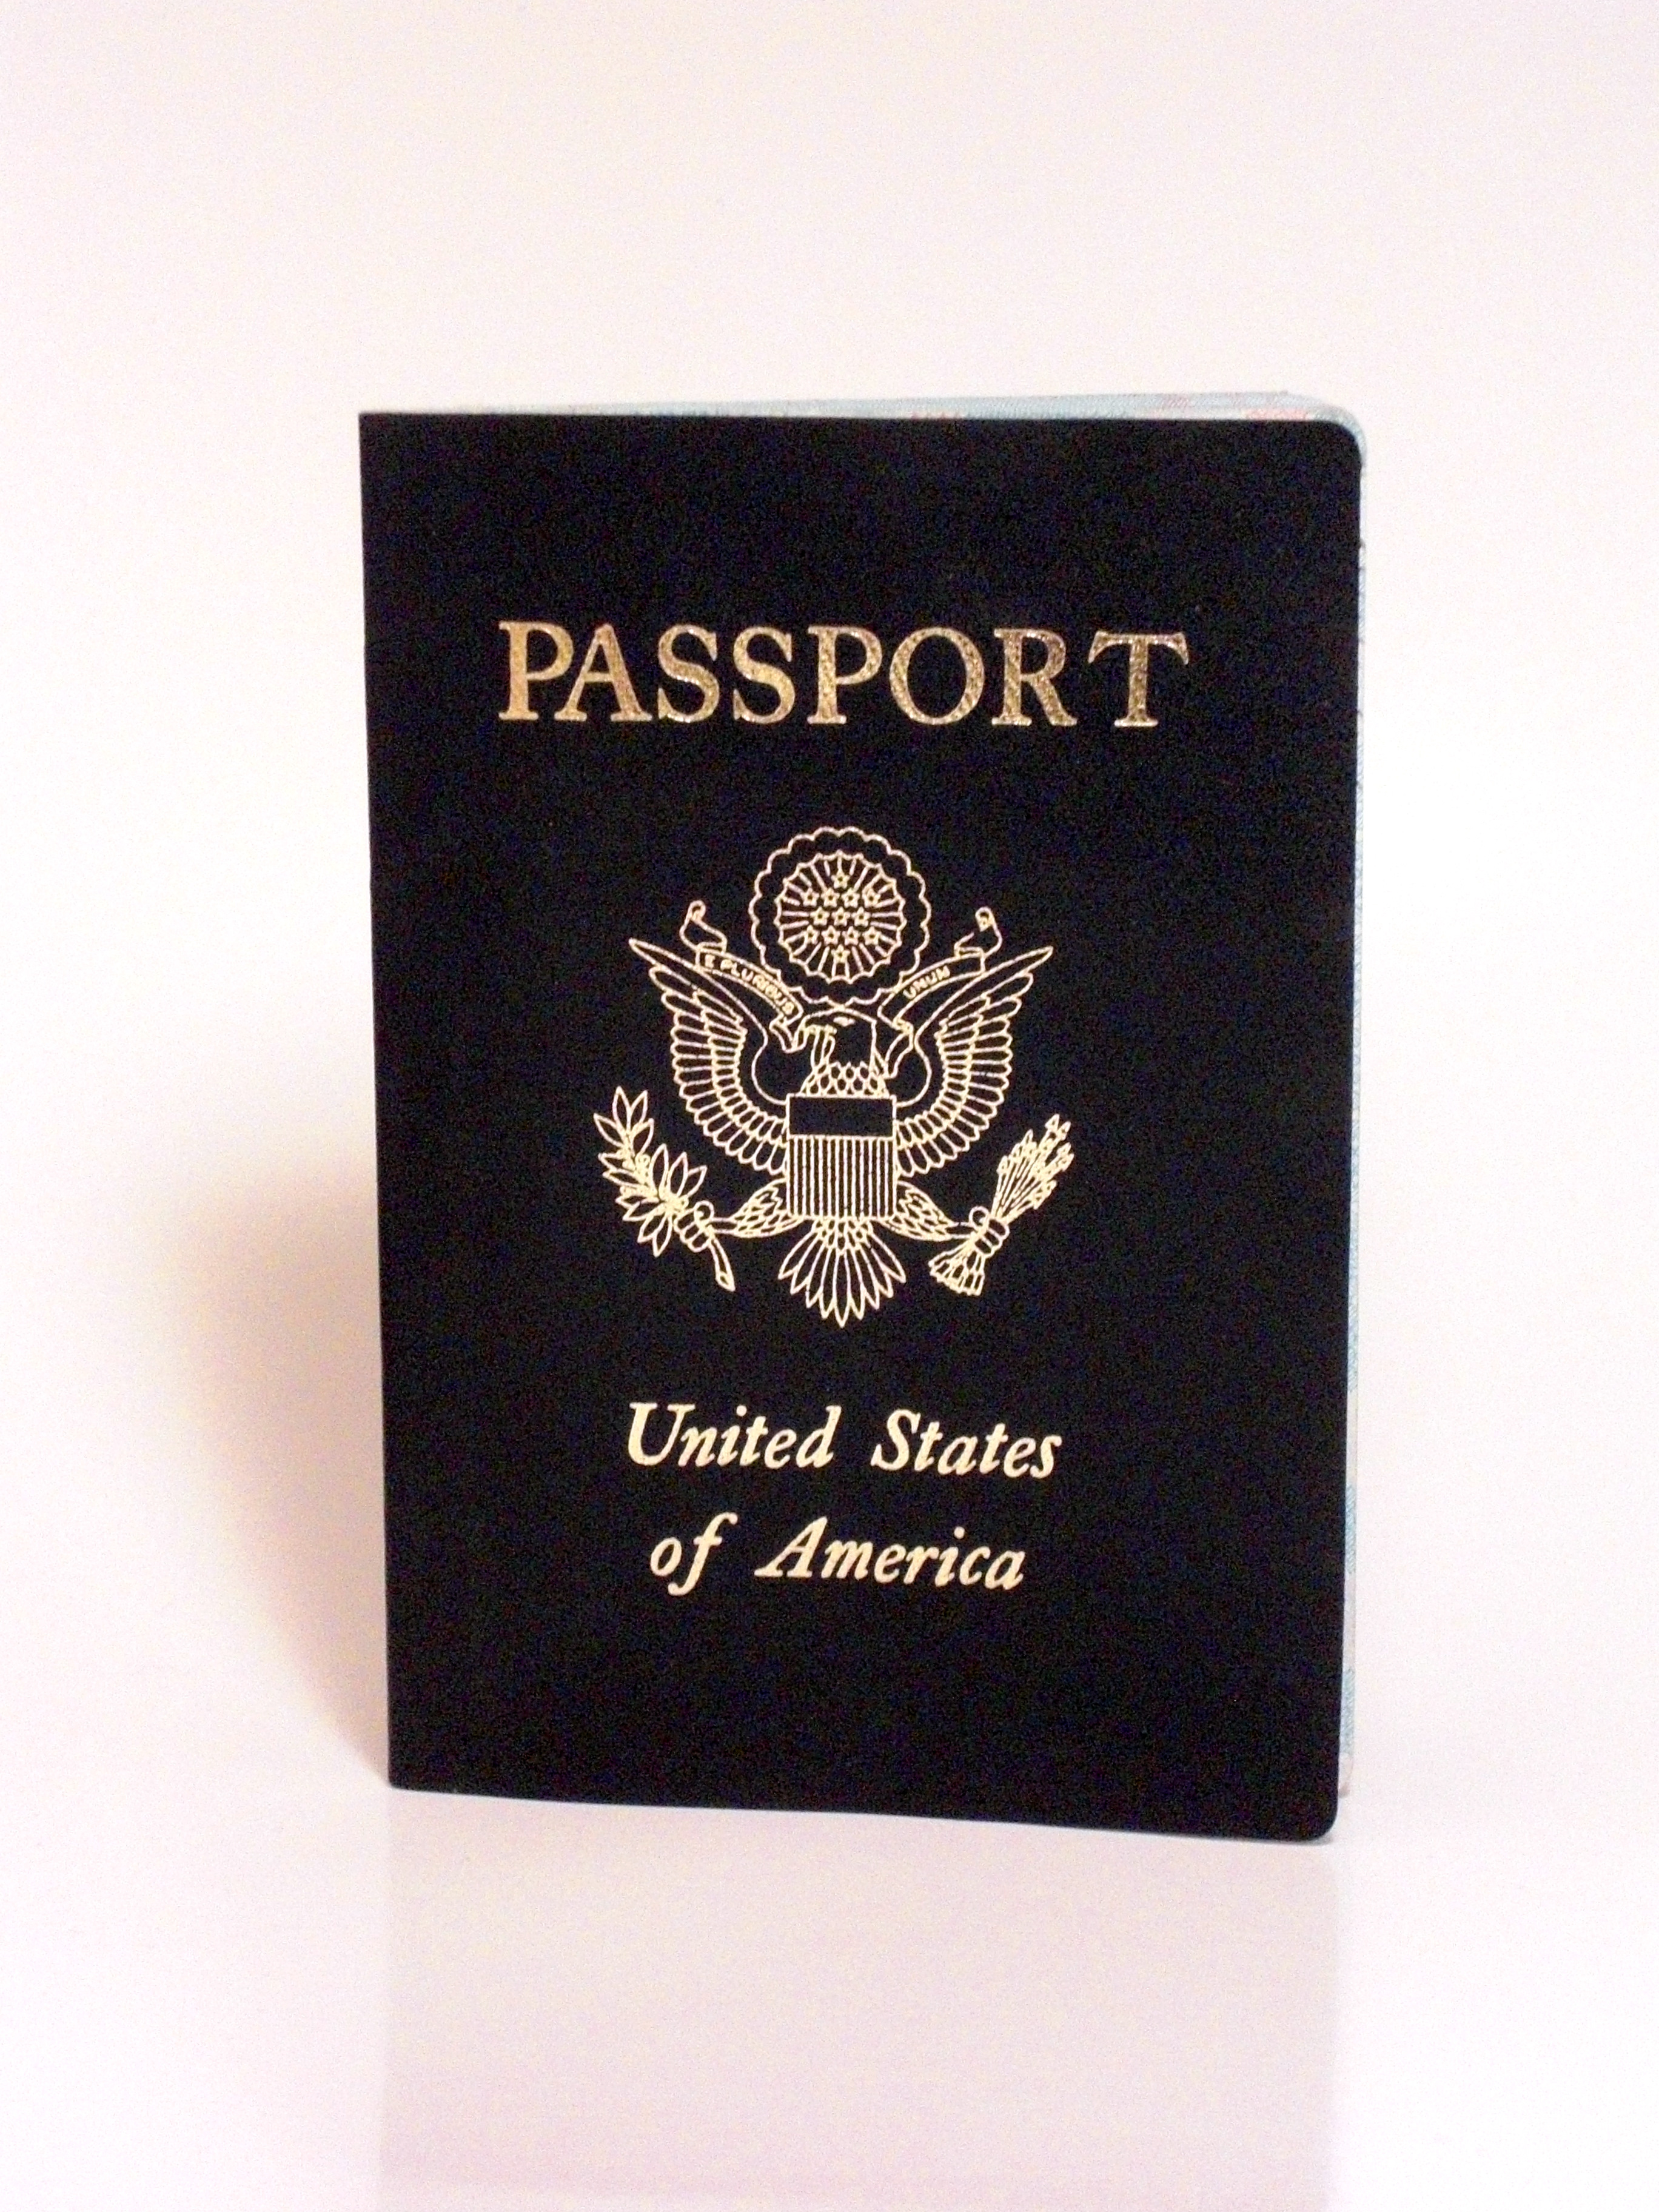 American passport photo